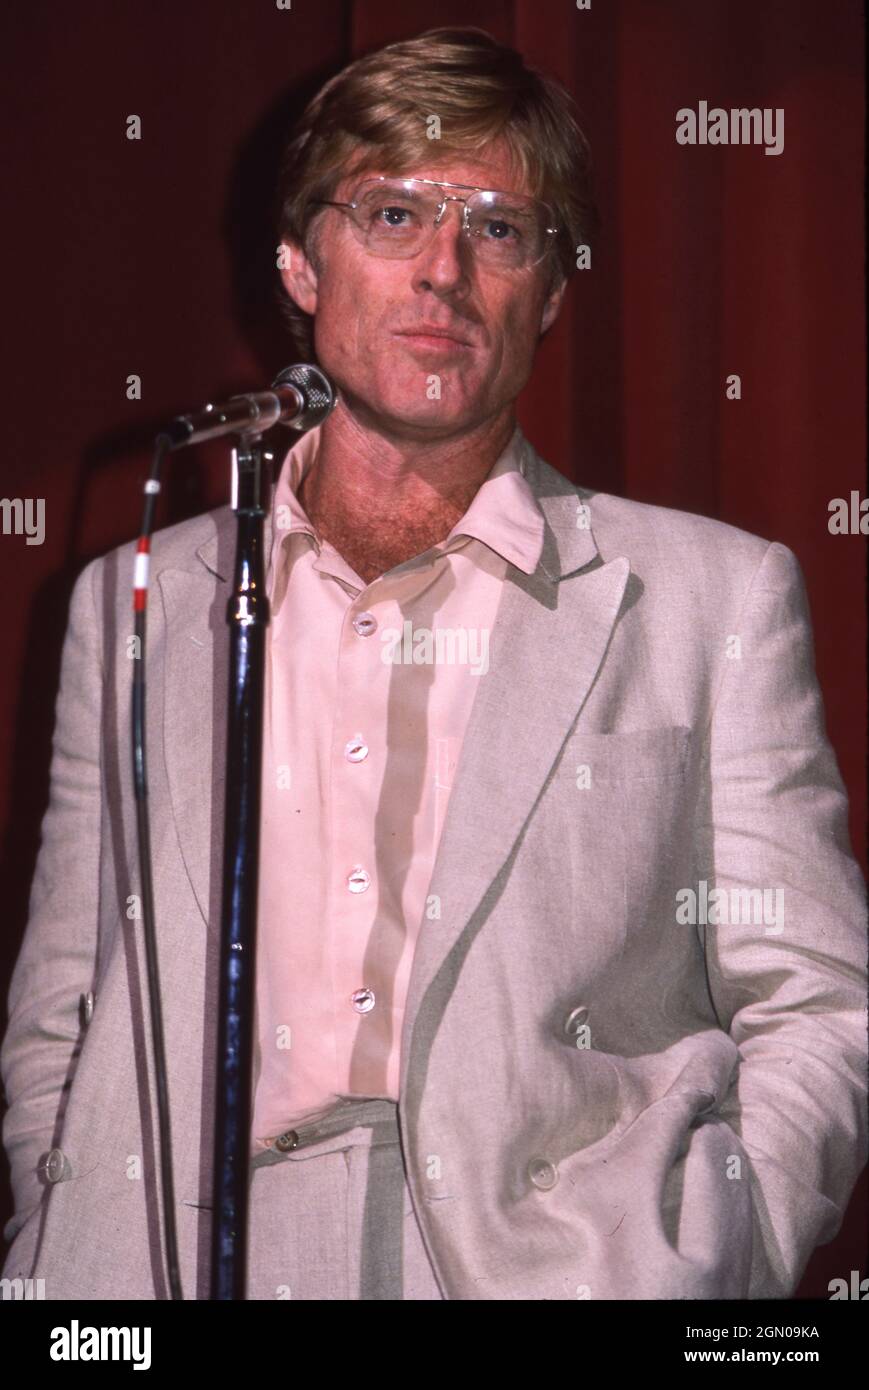 Austin Texas USA, 1986 de junio: El actor Robert Redford presenta una película en el Paramount Theatre como parte de una recaudación de fondos para su Sundance Institute. ©Bob Daemmrich Foto de stock